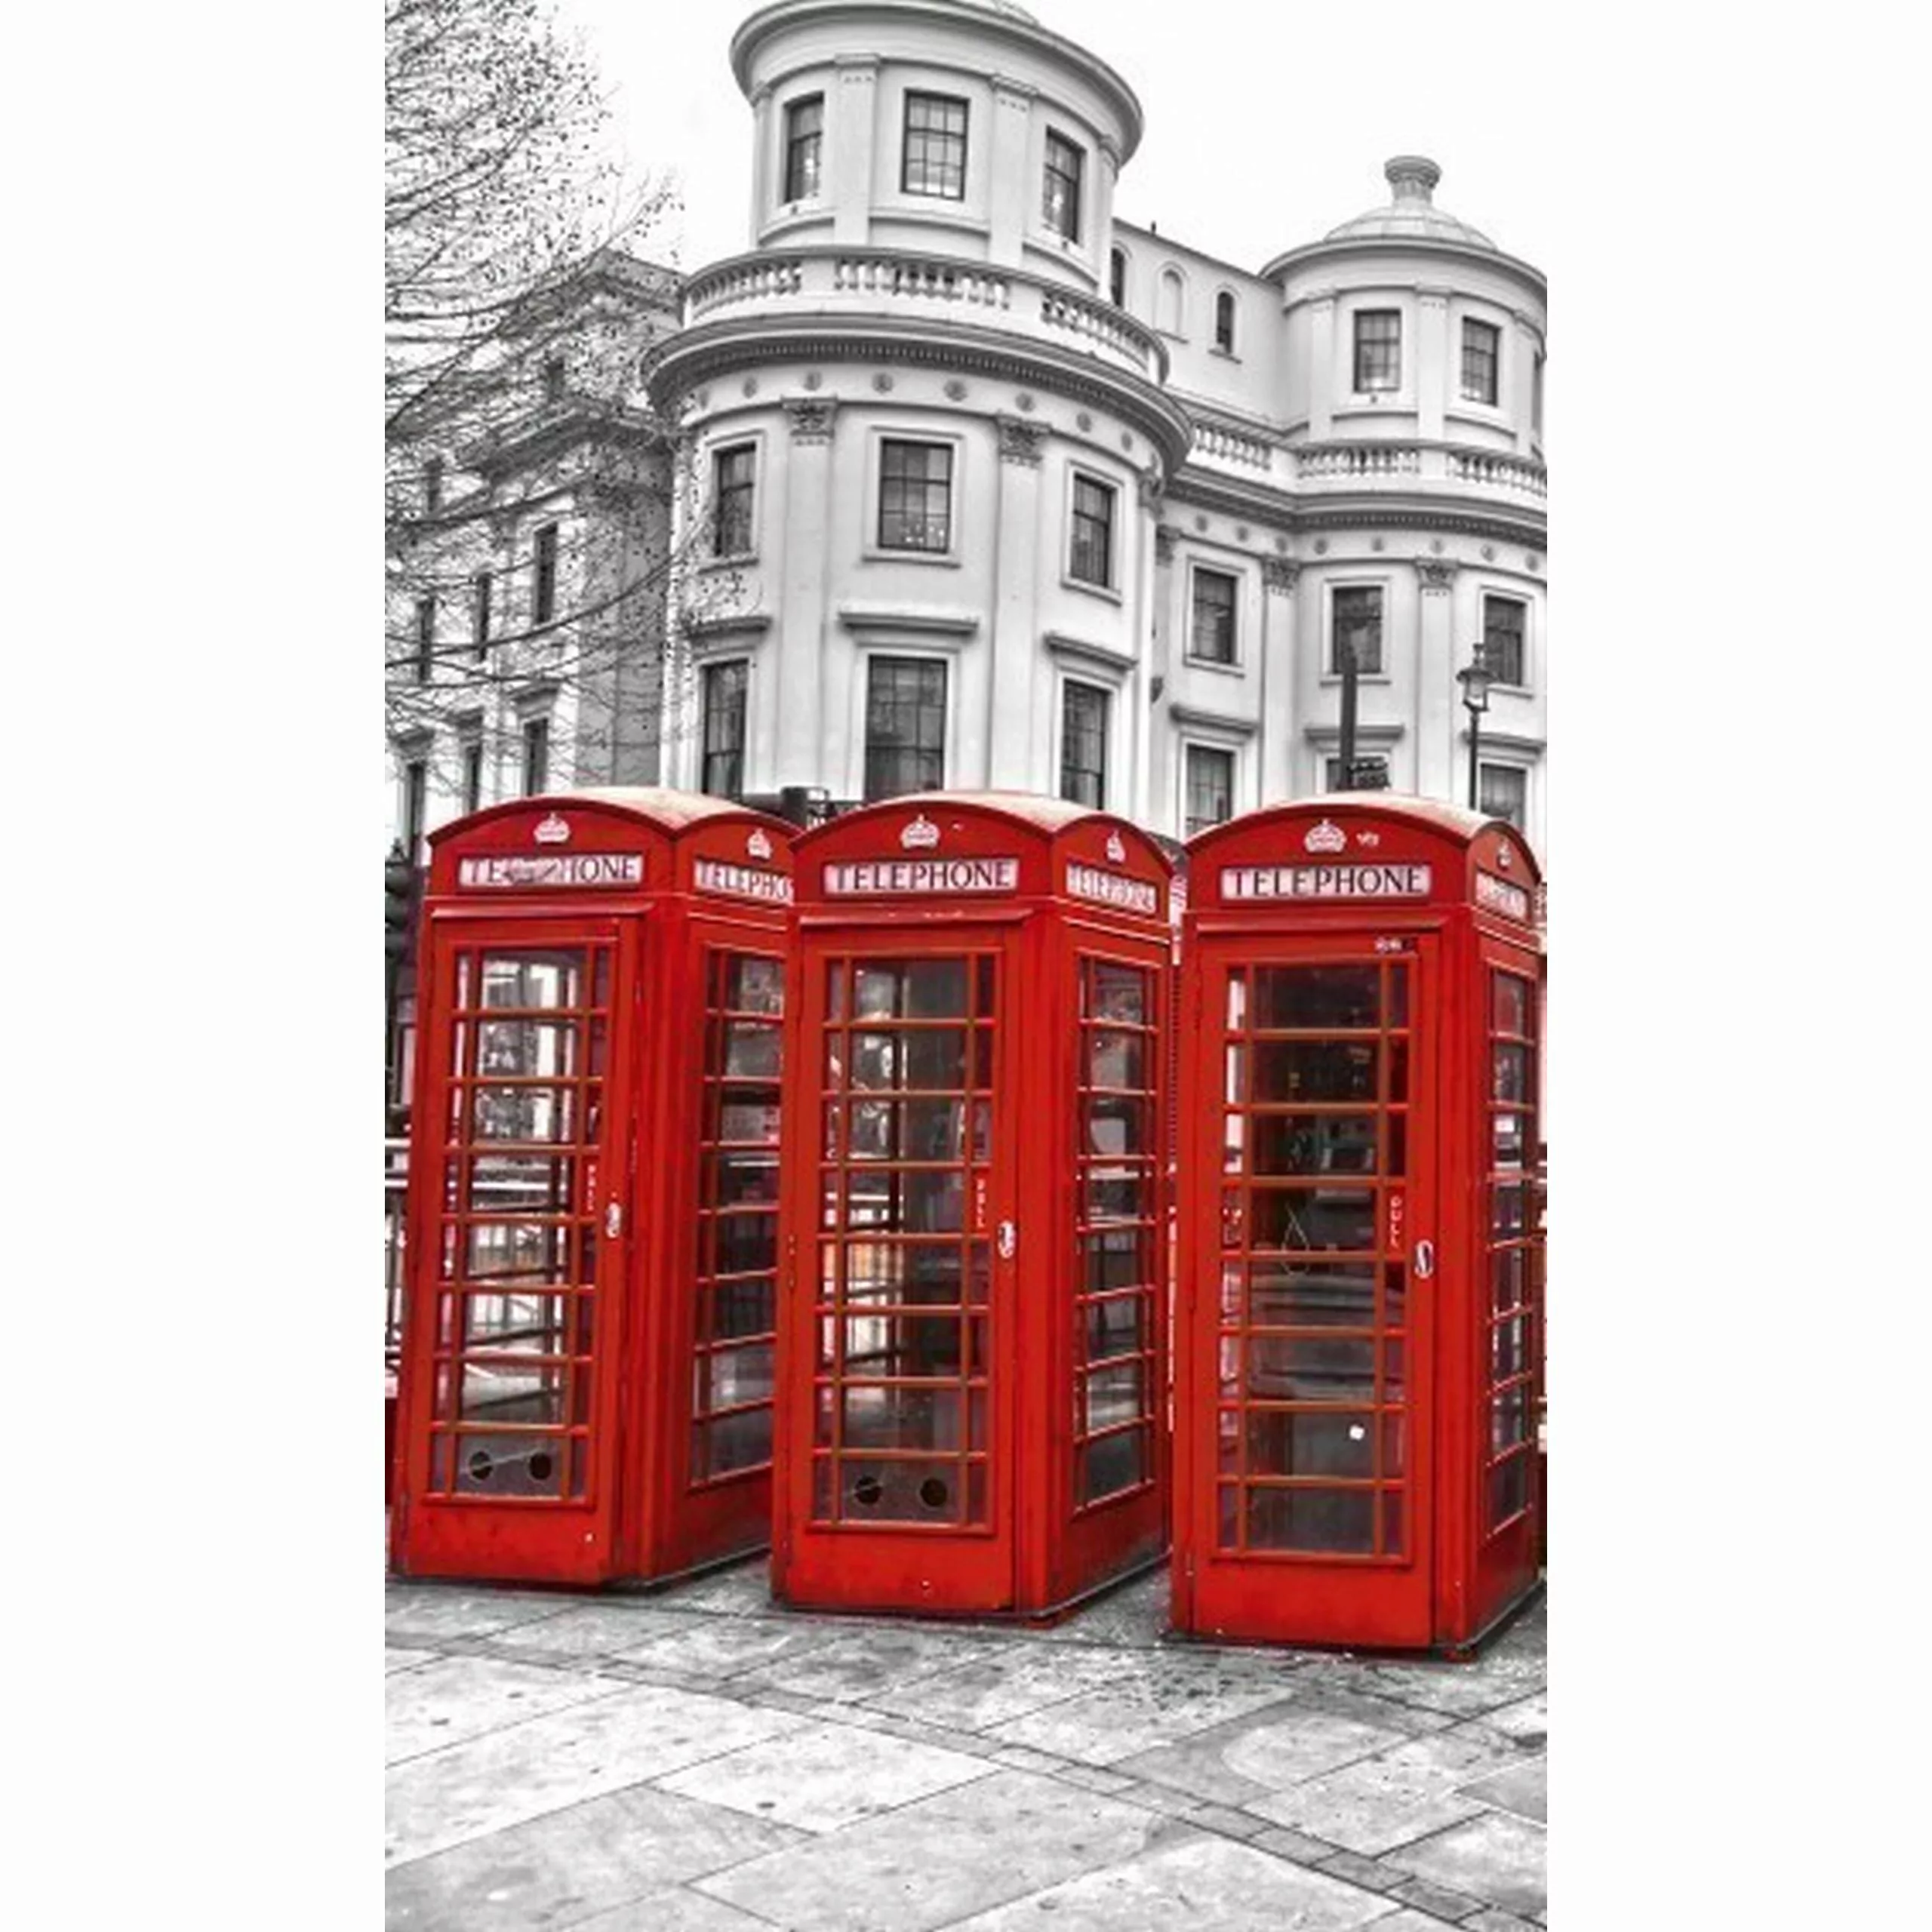 Fototapete LONDON | MS-2-0020 | Rot | Digitaldruck auf Vliesträger günstig online kaufen